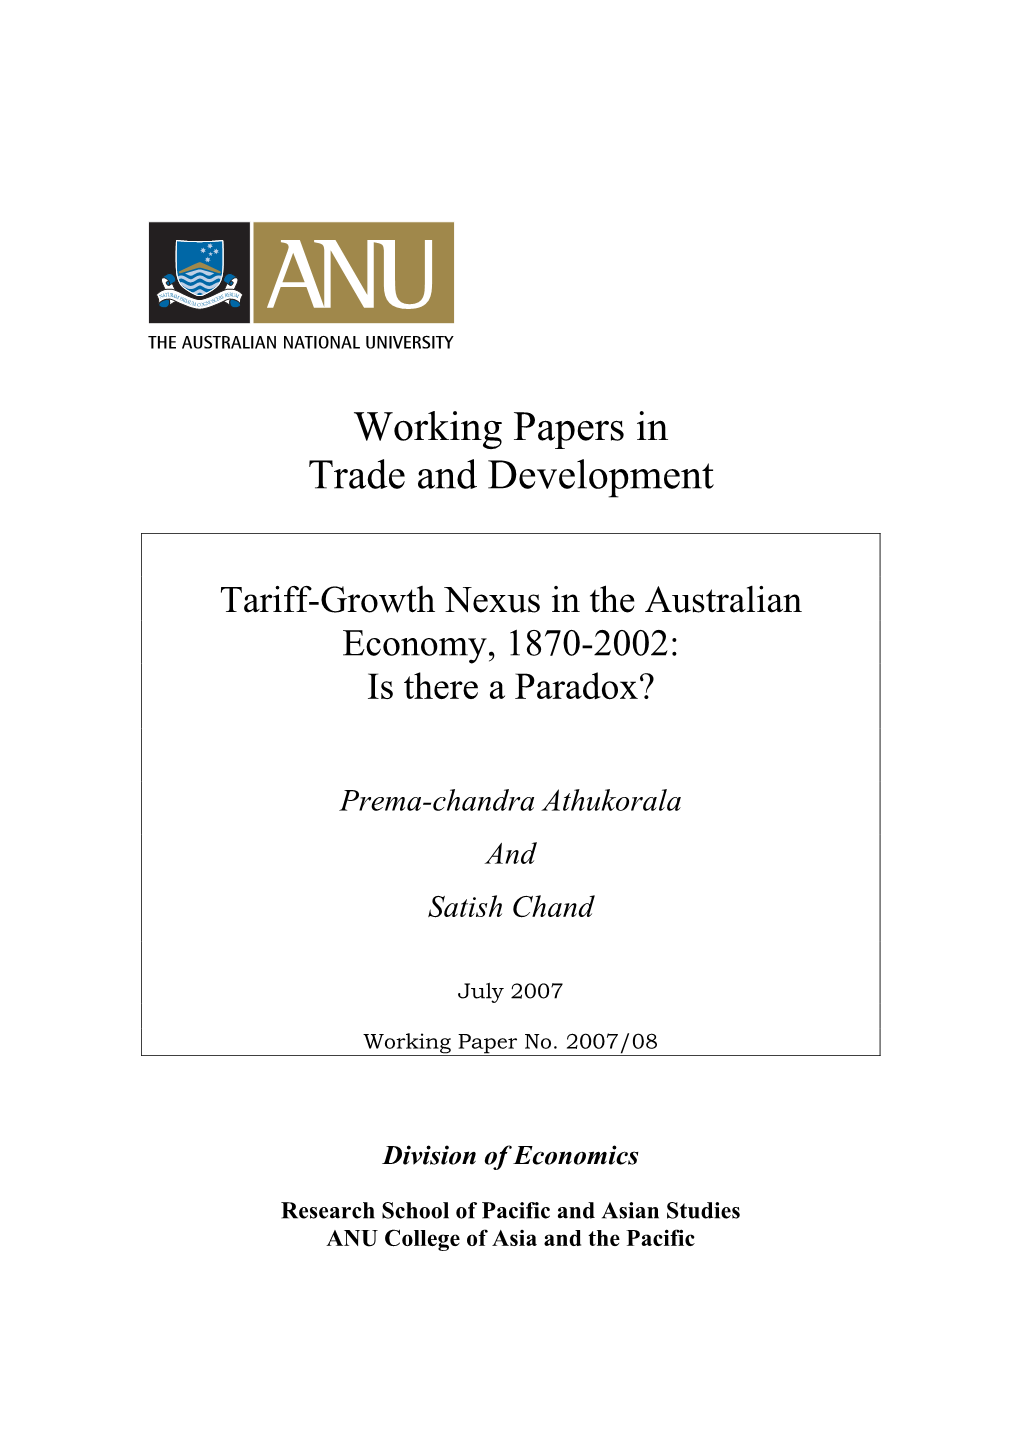 Tariff-Growth Nexus: an Analysis of One Hundred Years of Australian